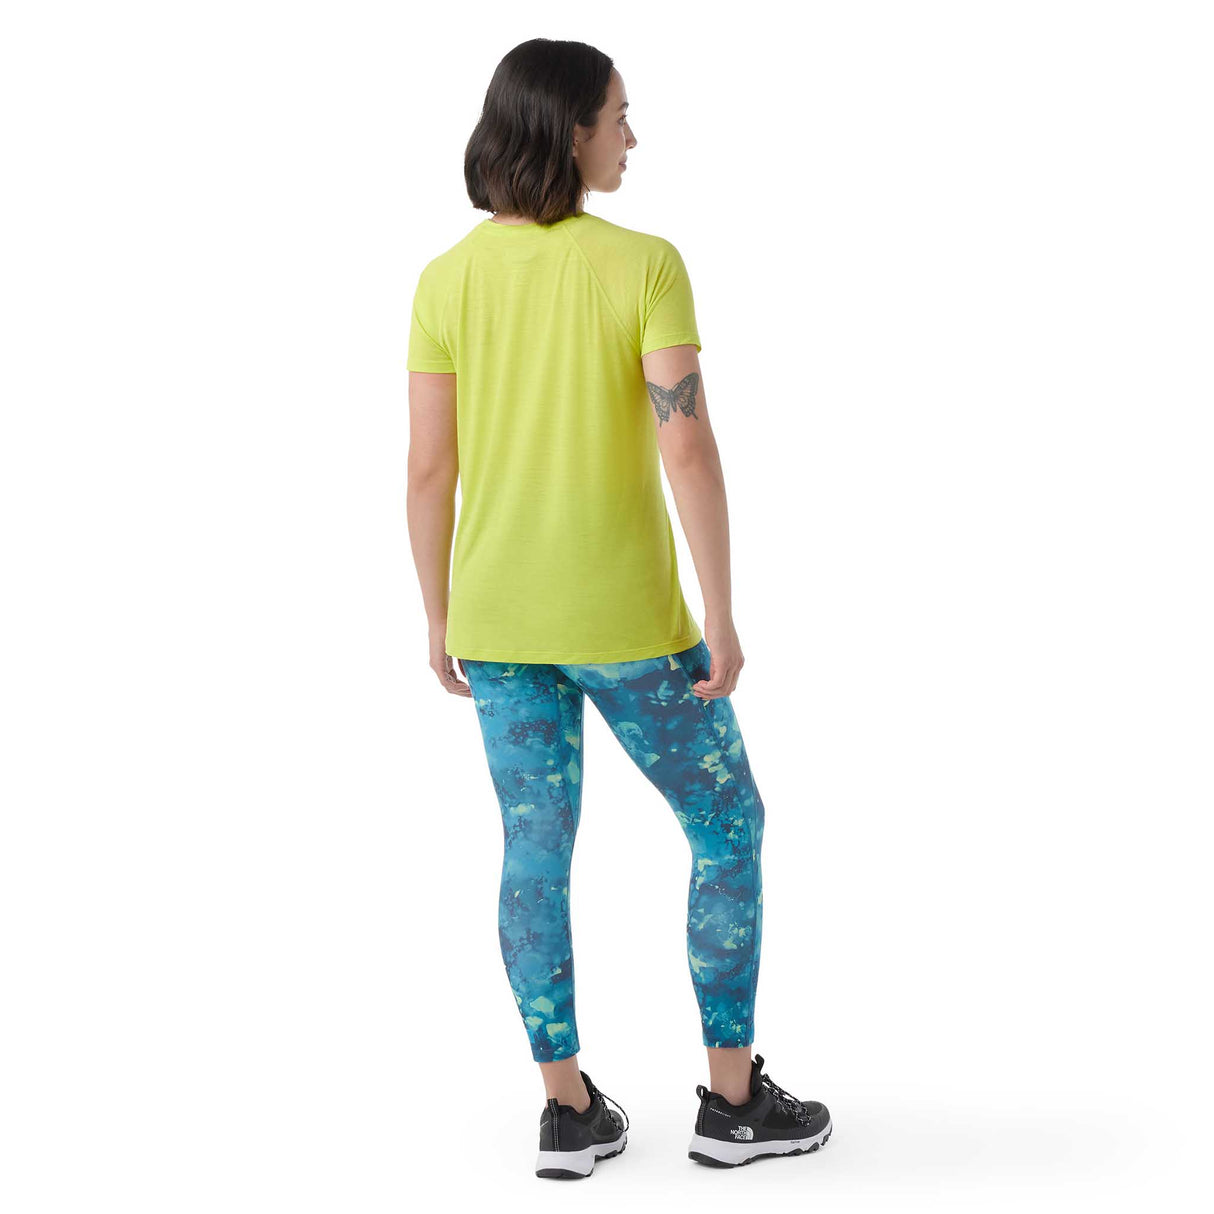 Smartwool Active Ultralite t-shirt à manches courtes femme dos- citron vert